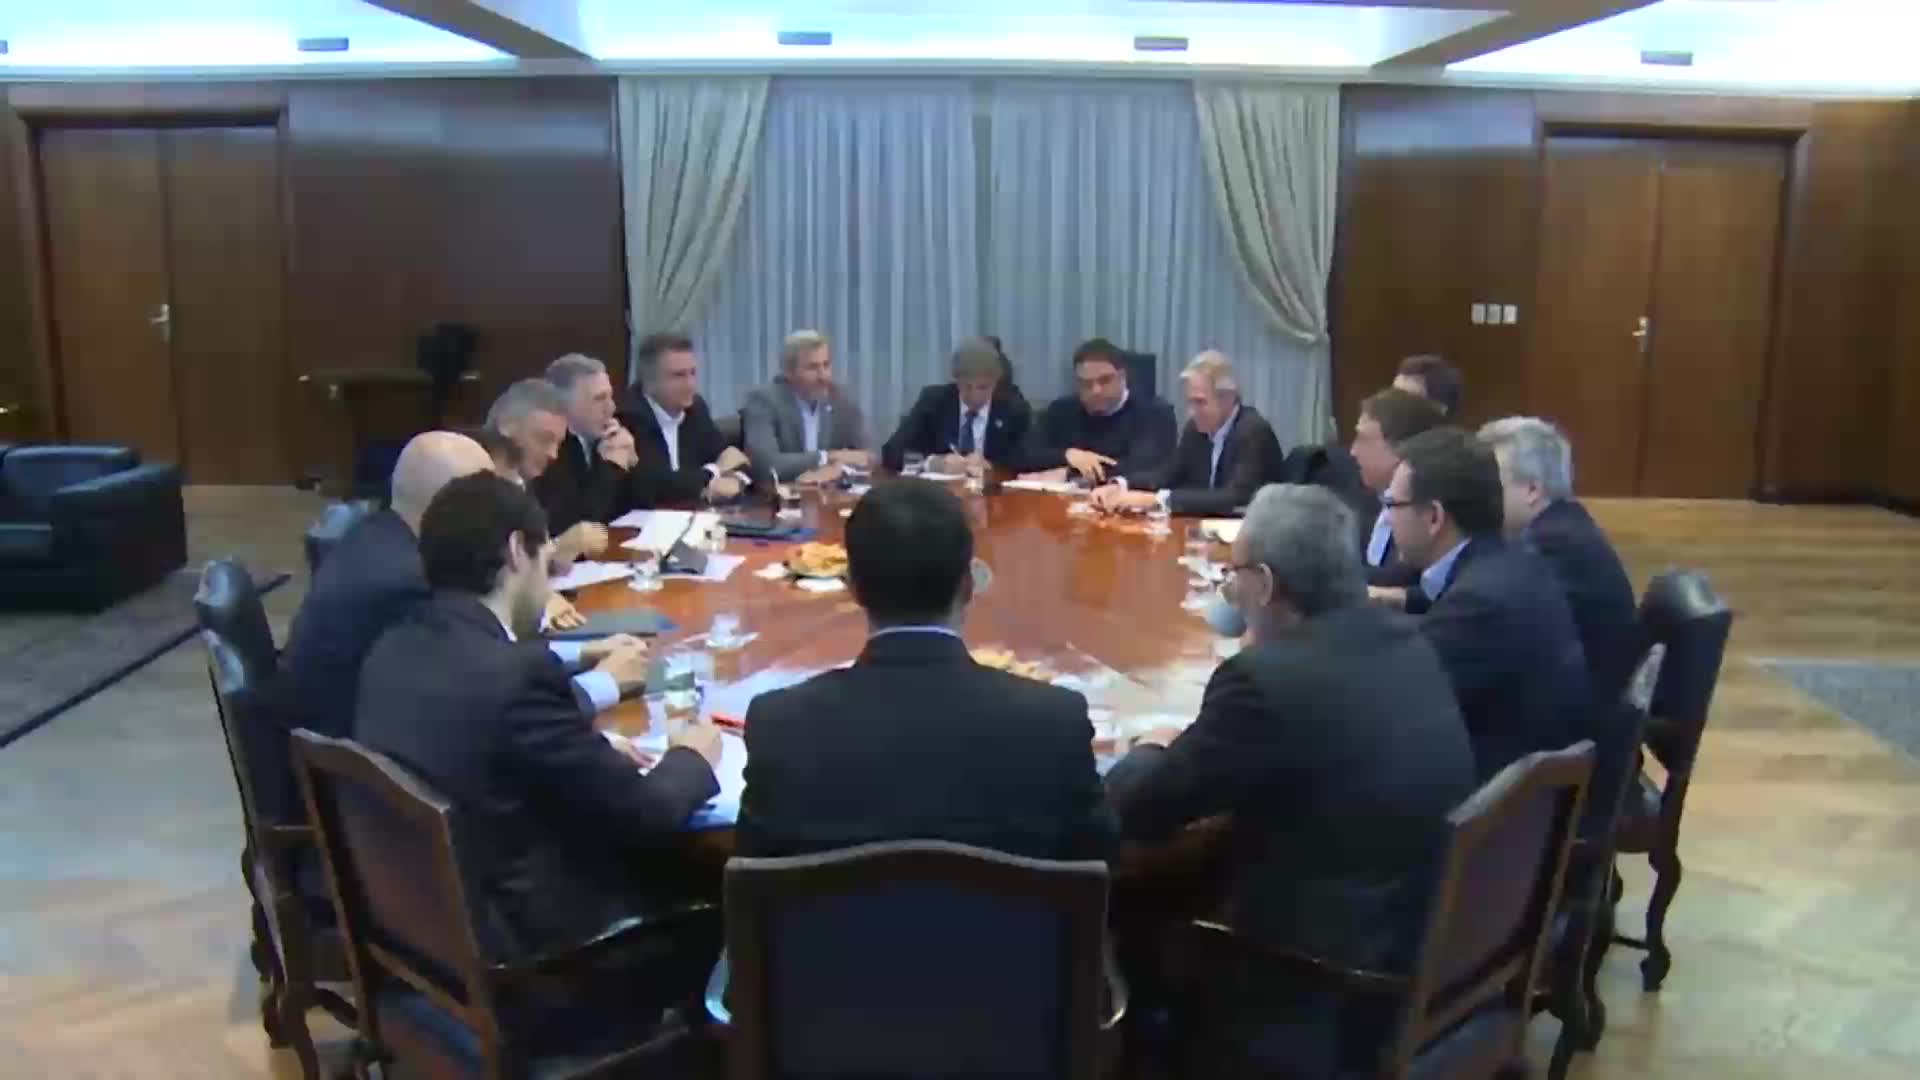 Primera reunión del nuevo equipo económico de Macri: Dujovne pidió austeridad y medidas para reducir la pobreza